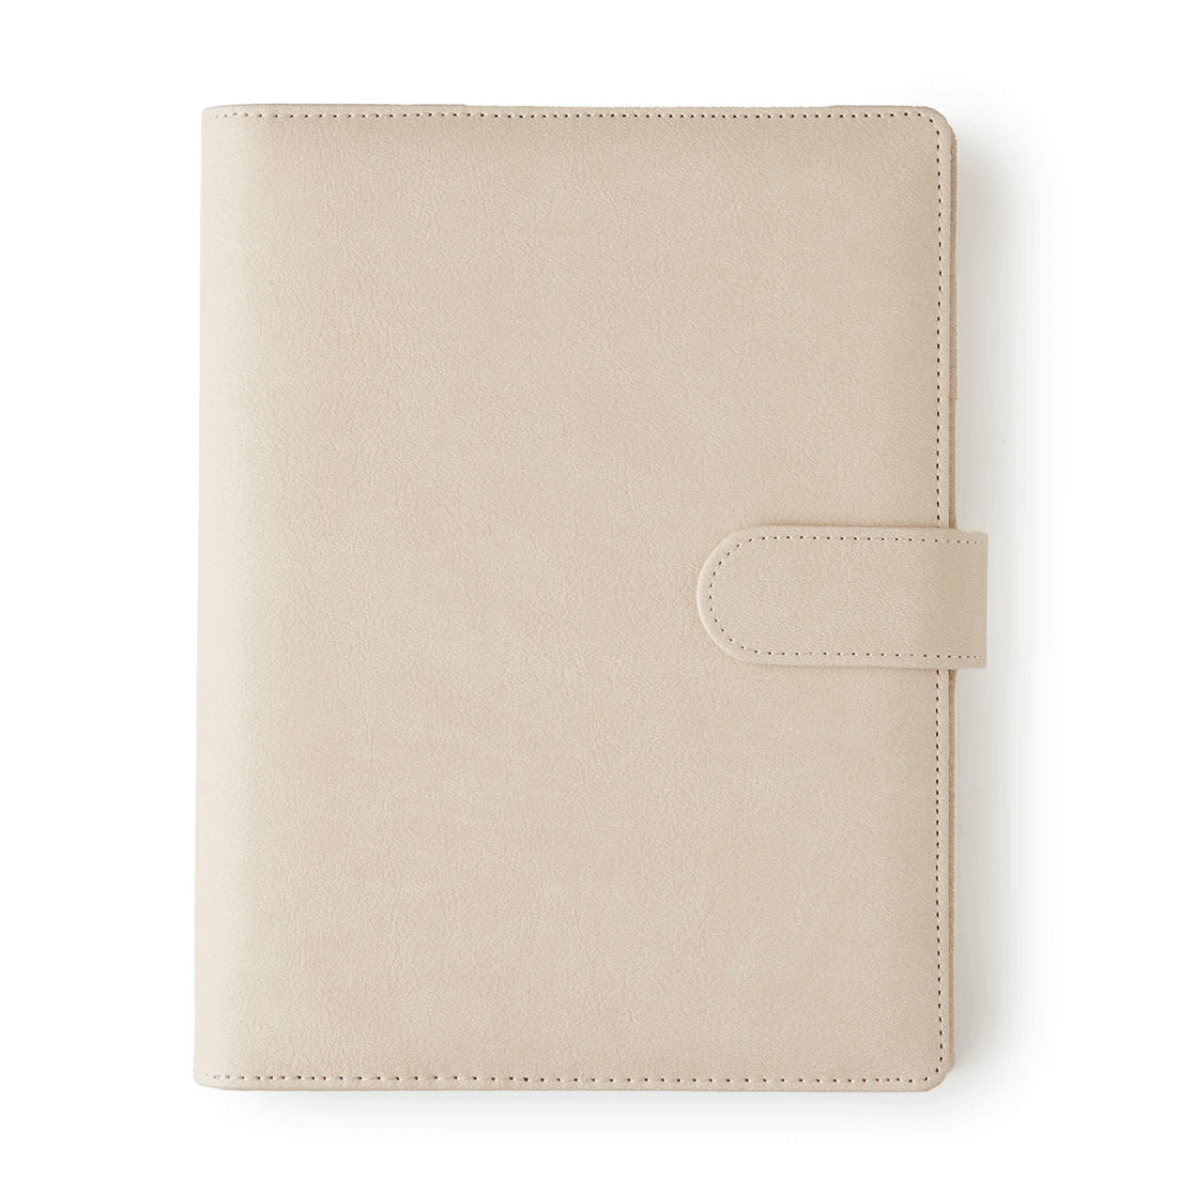 Daily Goal Setter - Agenda cover tan - My Lovely Notebook